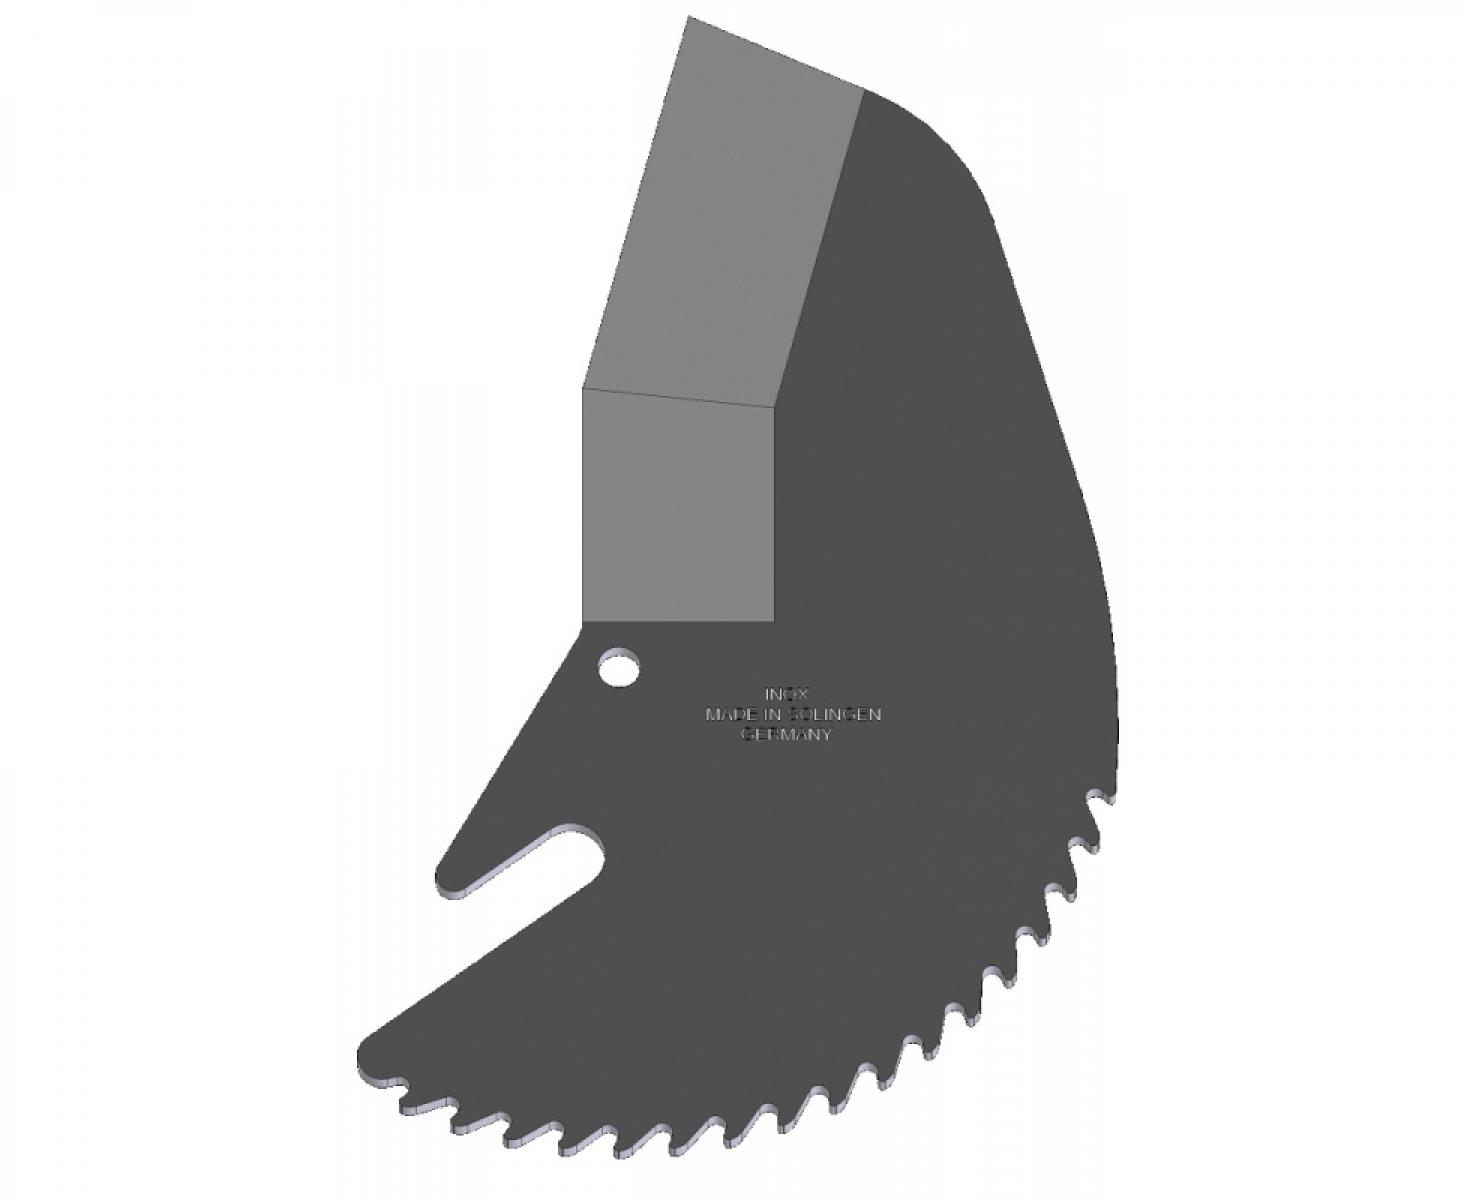 Сменное лезвие для ножниц Raptor 5063-1 Zenten 5004-1